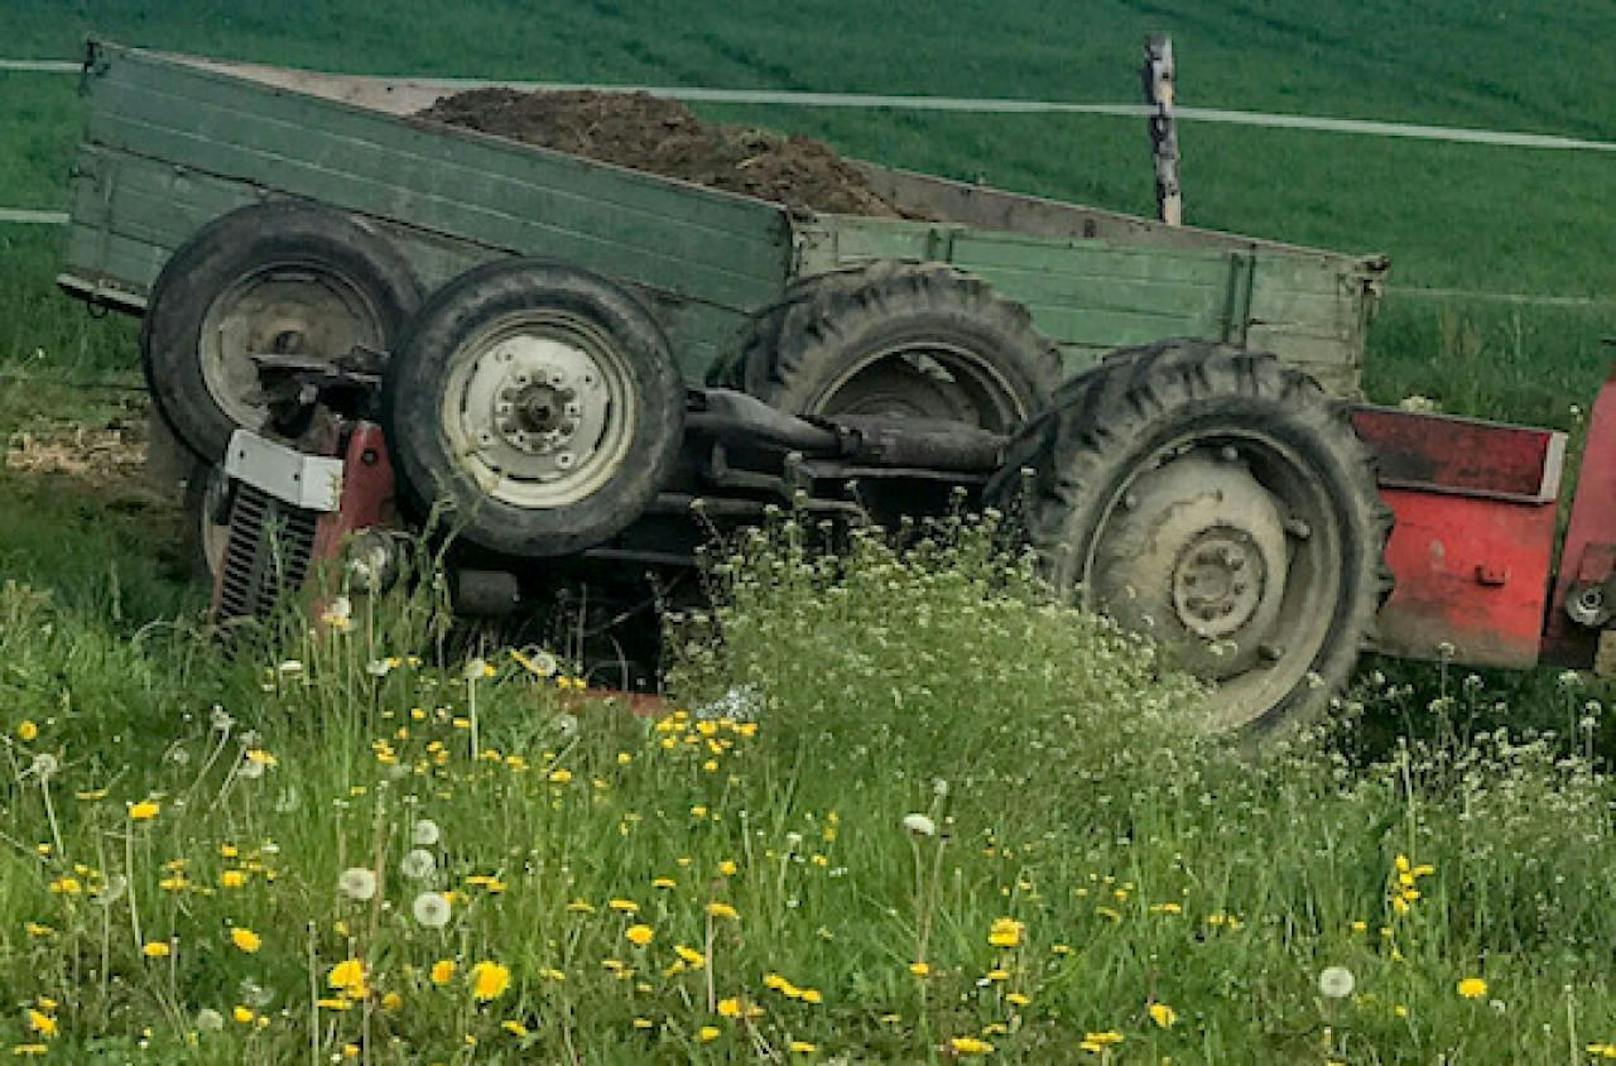 Der 40-Jährige geriet bei dem Unfall unter den Traktor und verstarb an der Unfallstelle.